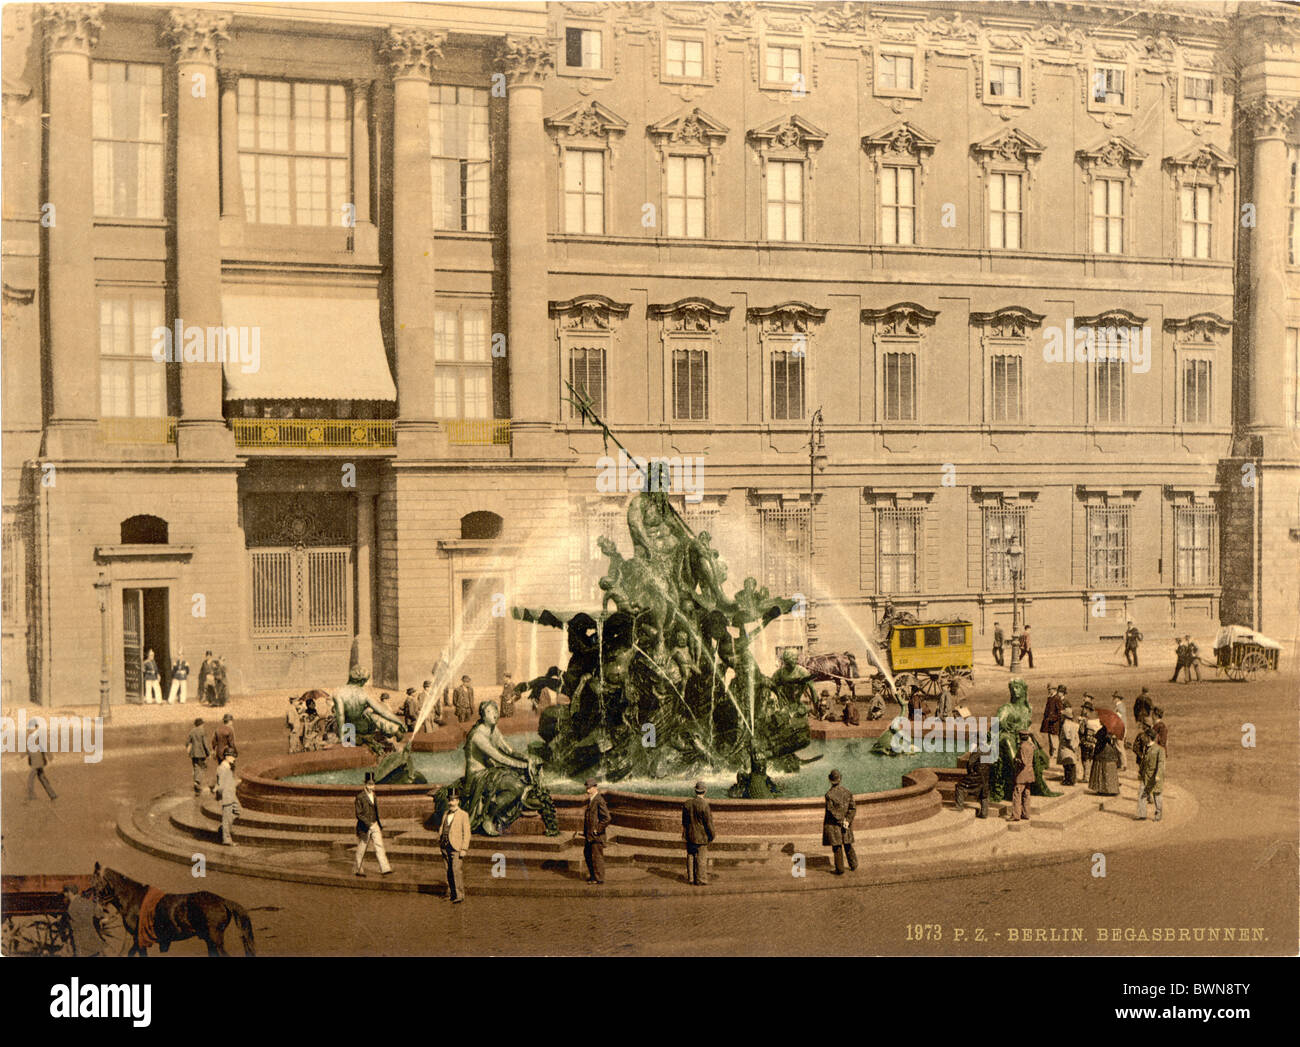 Fontaine de Neptune Palais Royal de Berlin Allemagne Europe Photochrom sur 1900 h historique de l'histoire de l'Empire allemand Banque D'Images